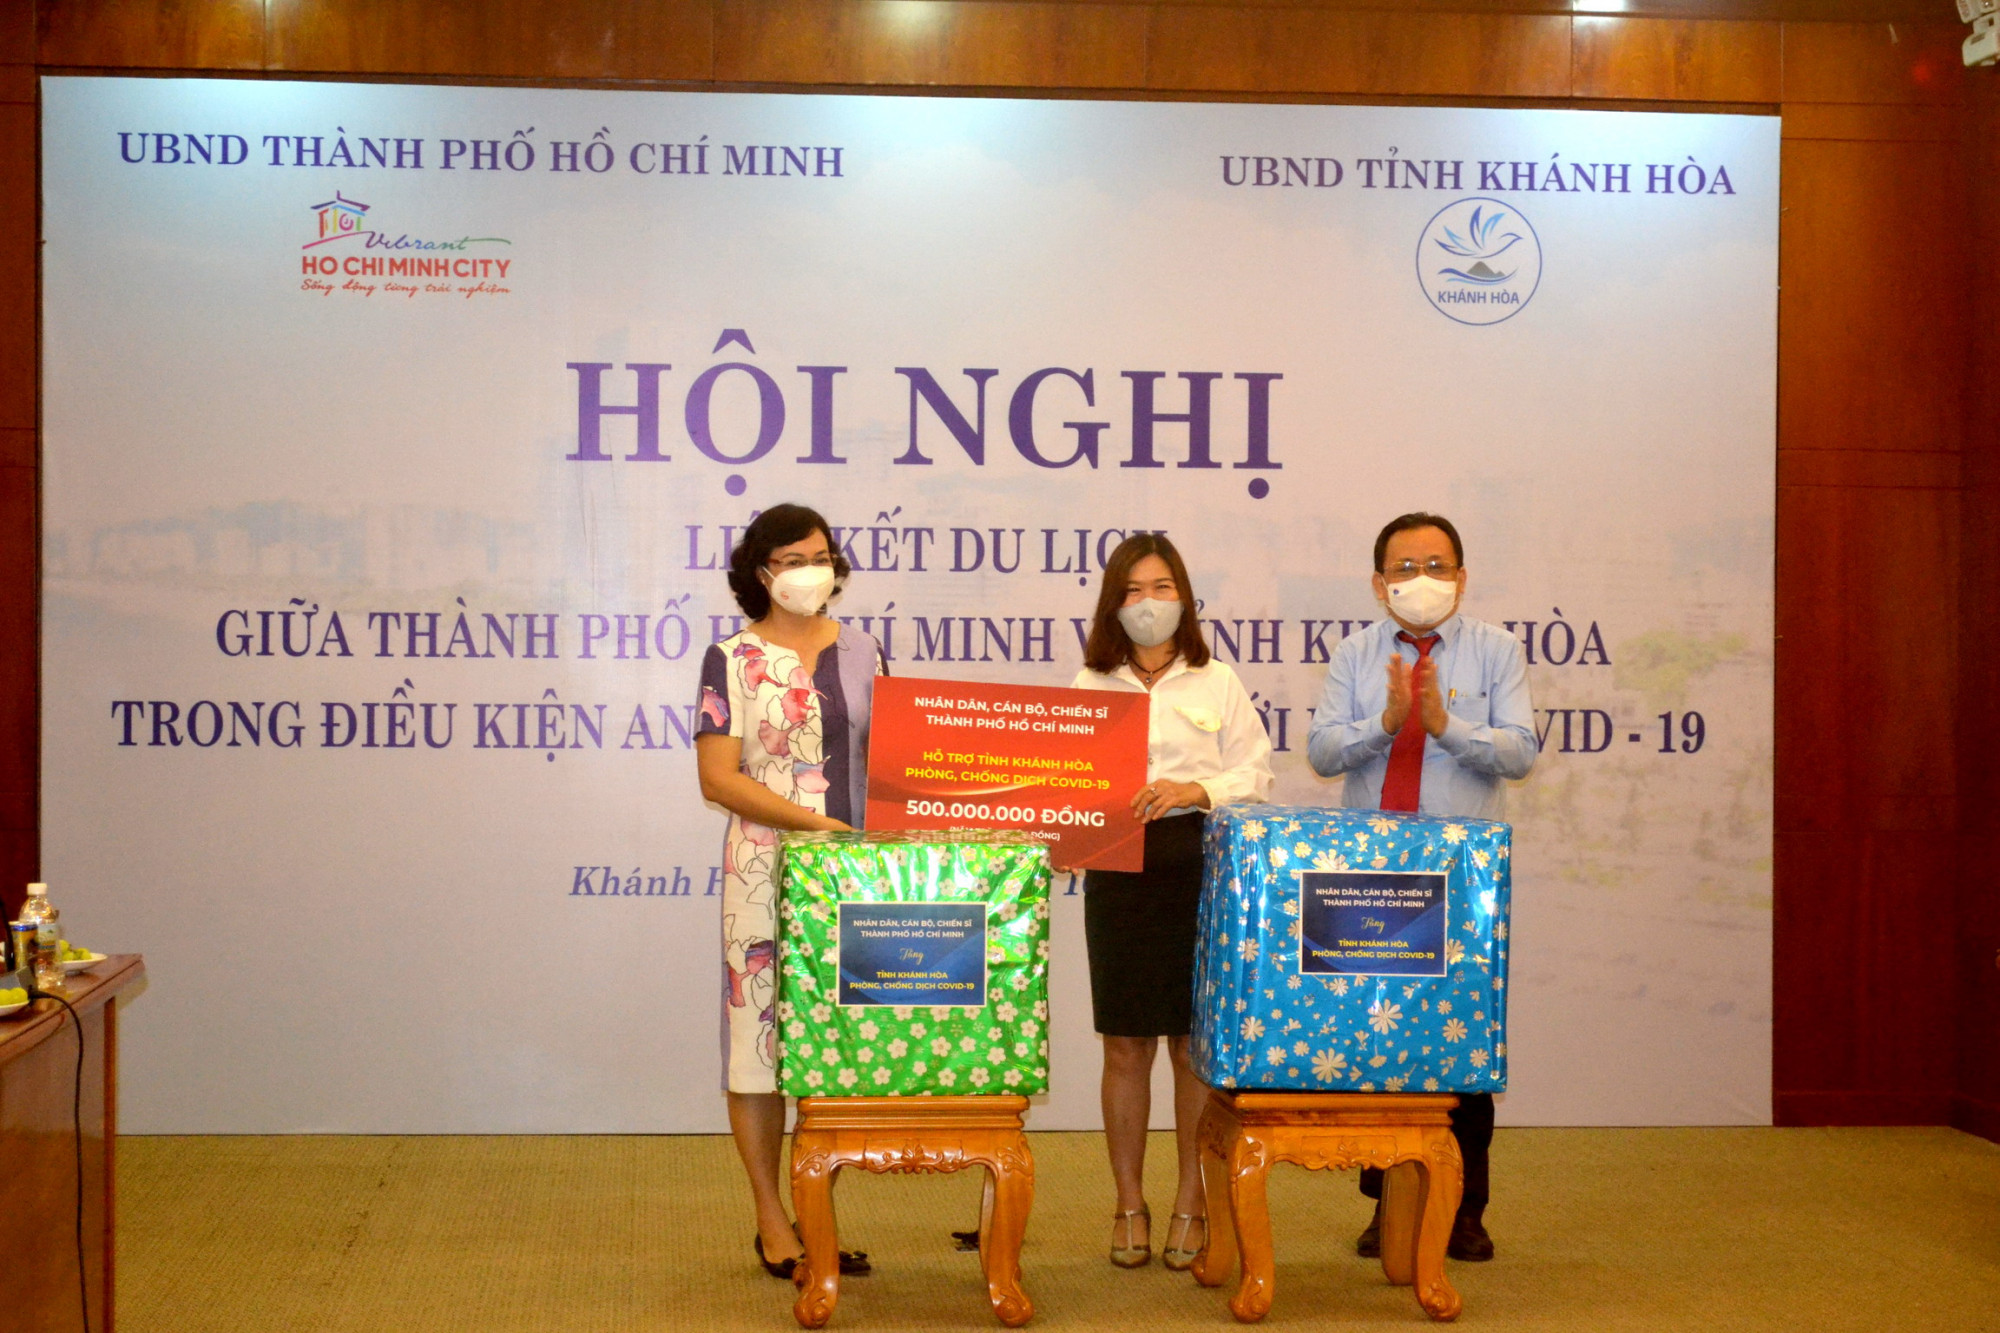 TPHCM trao quà hỗ trợ tỉnh Khánh Hòa chống dịch Covid-19